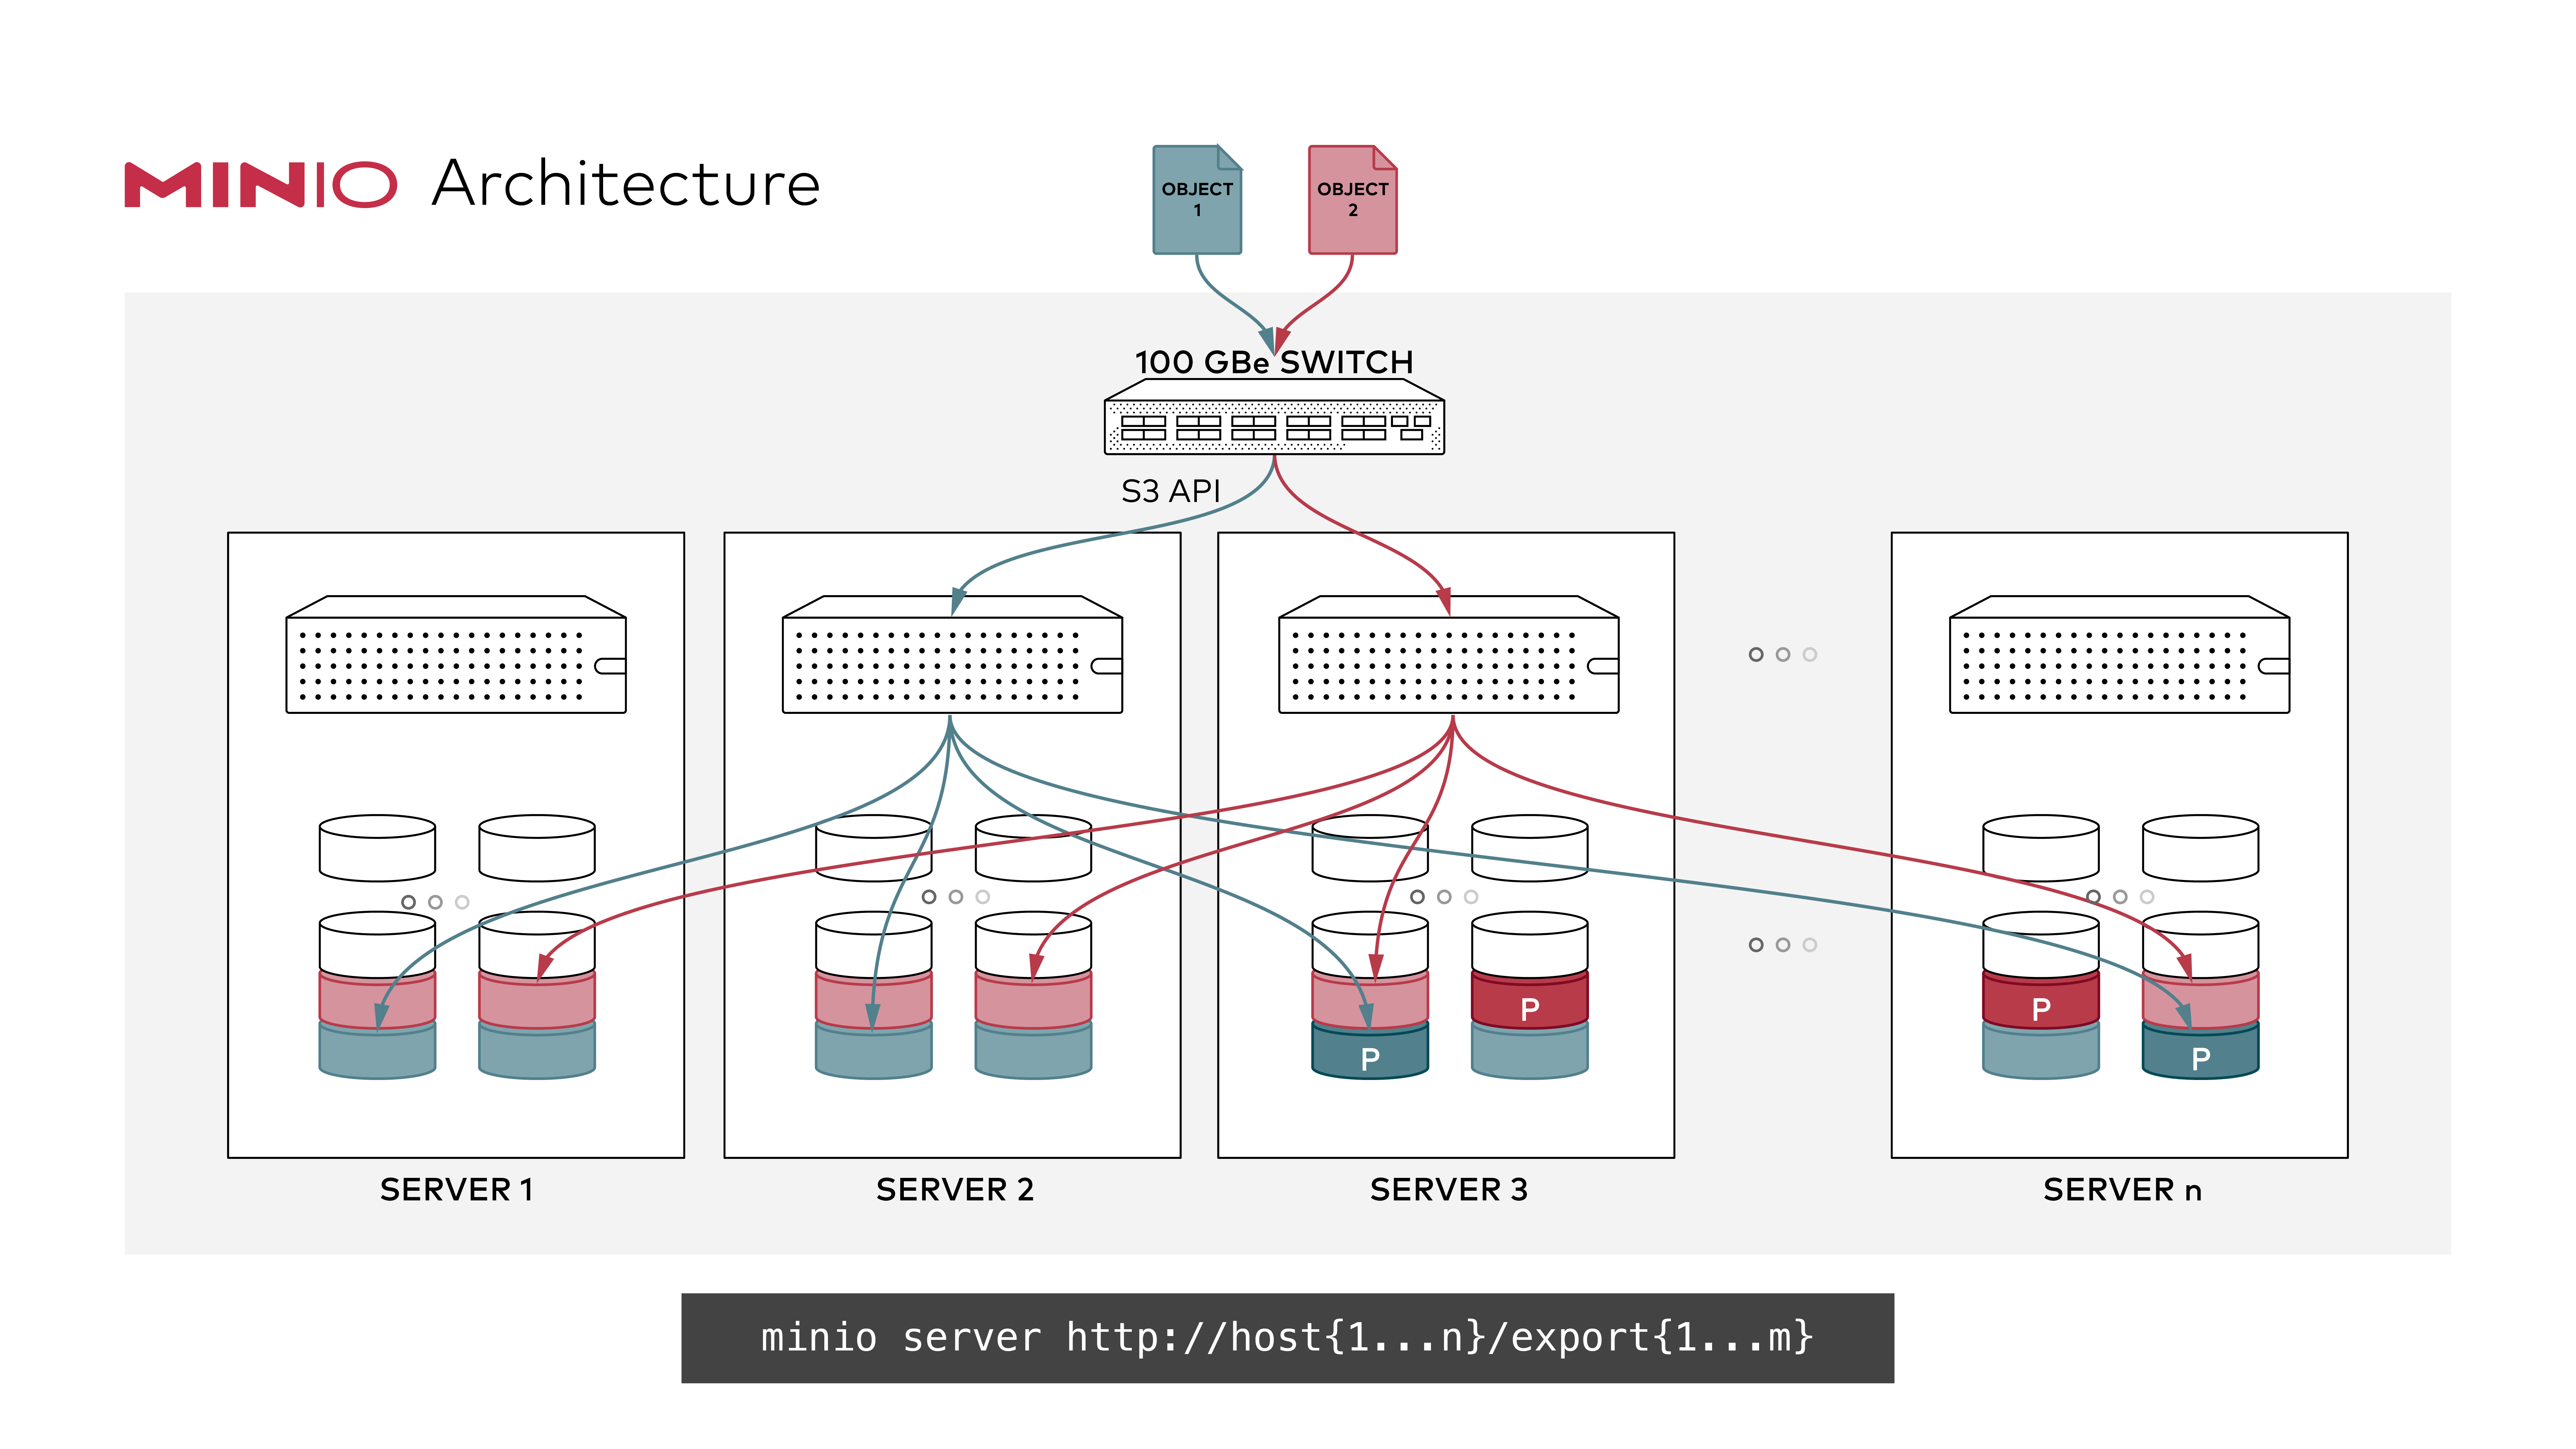 MinIO分布式文件存储 - 分布式架构图